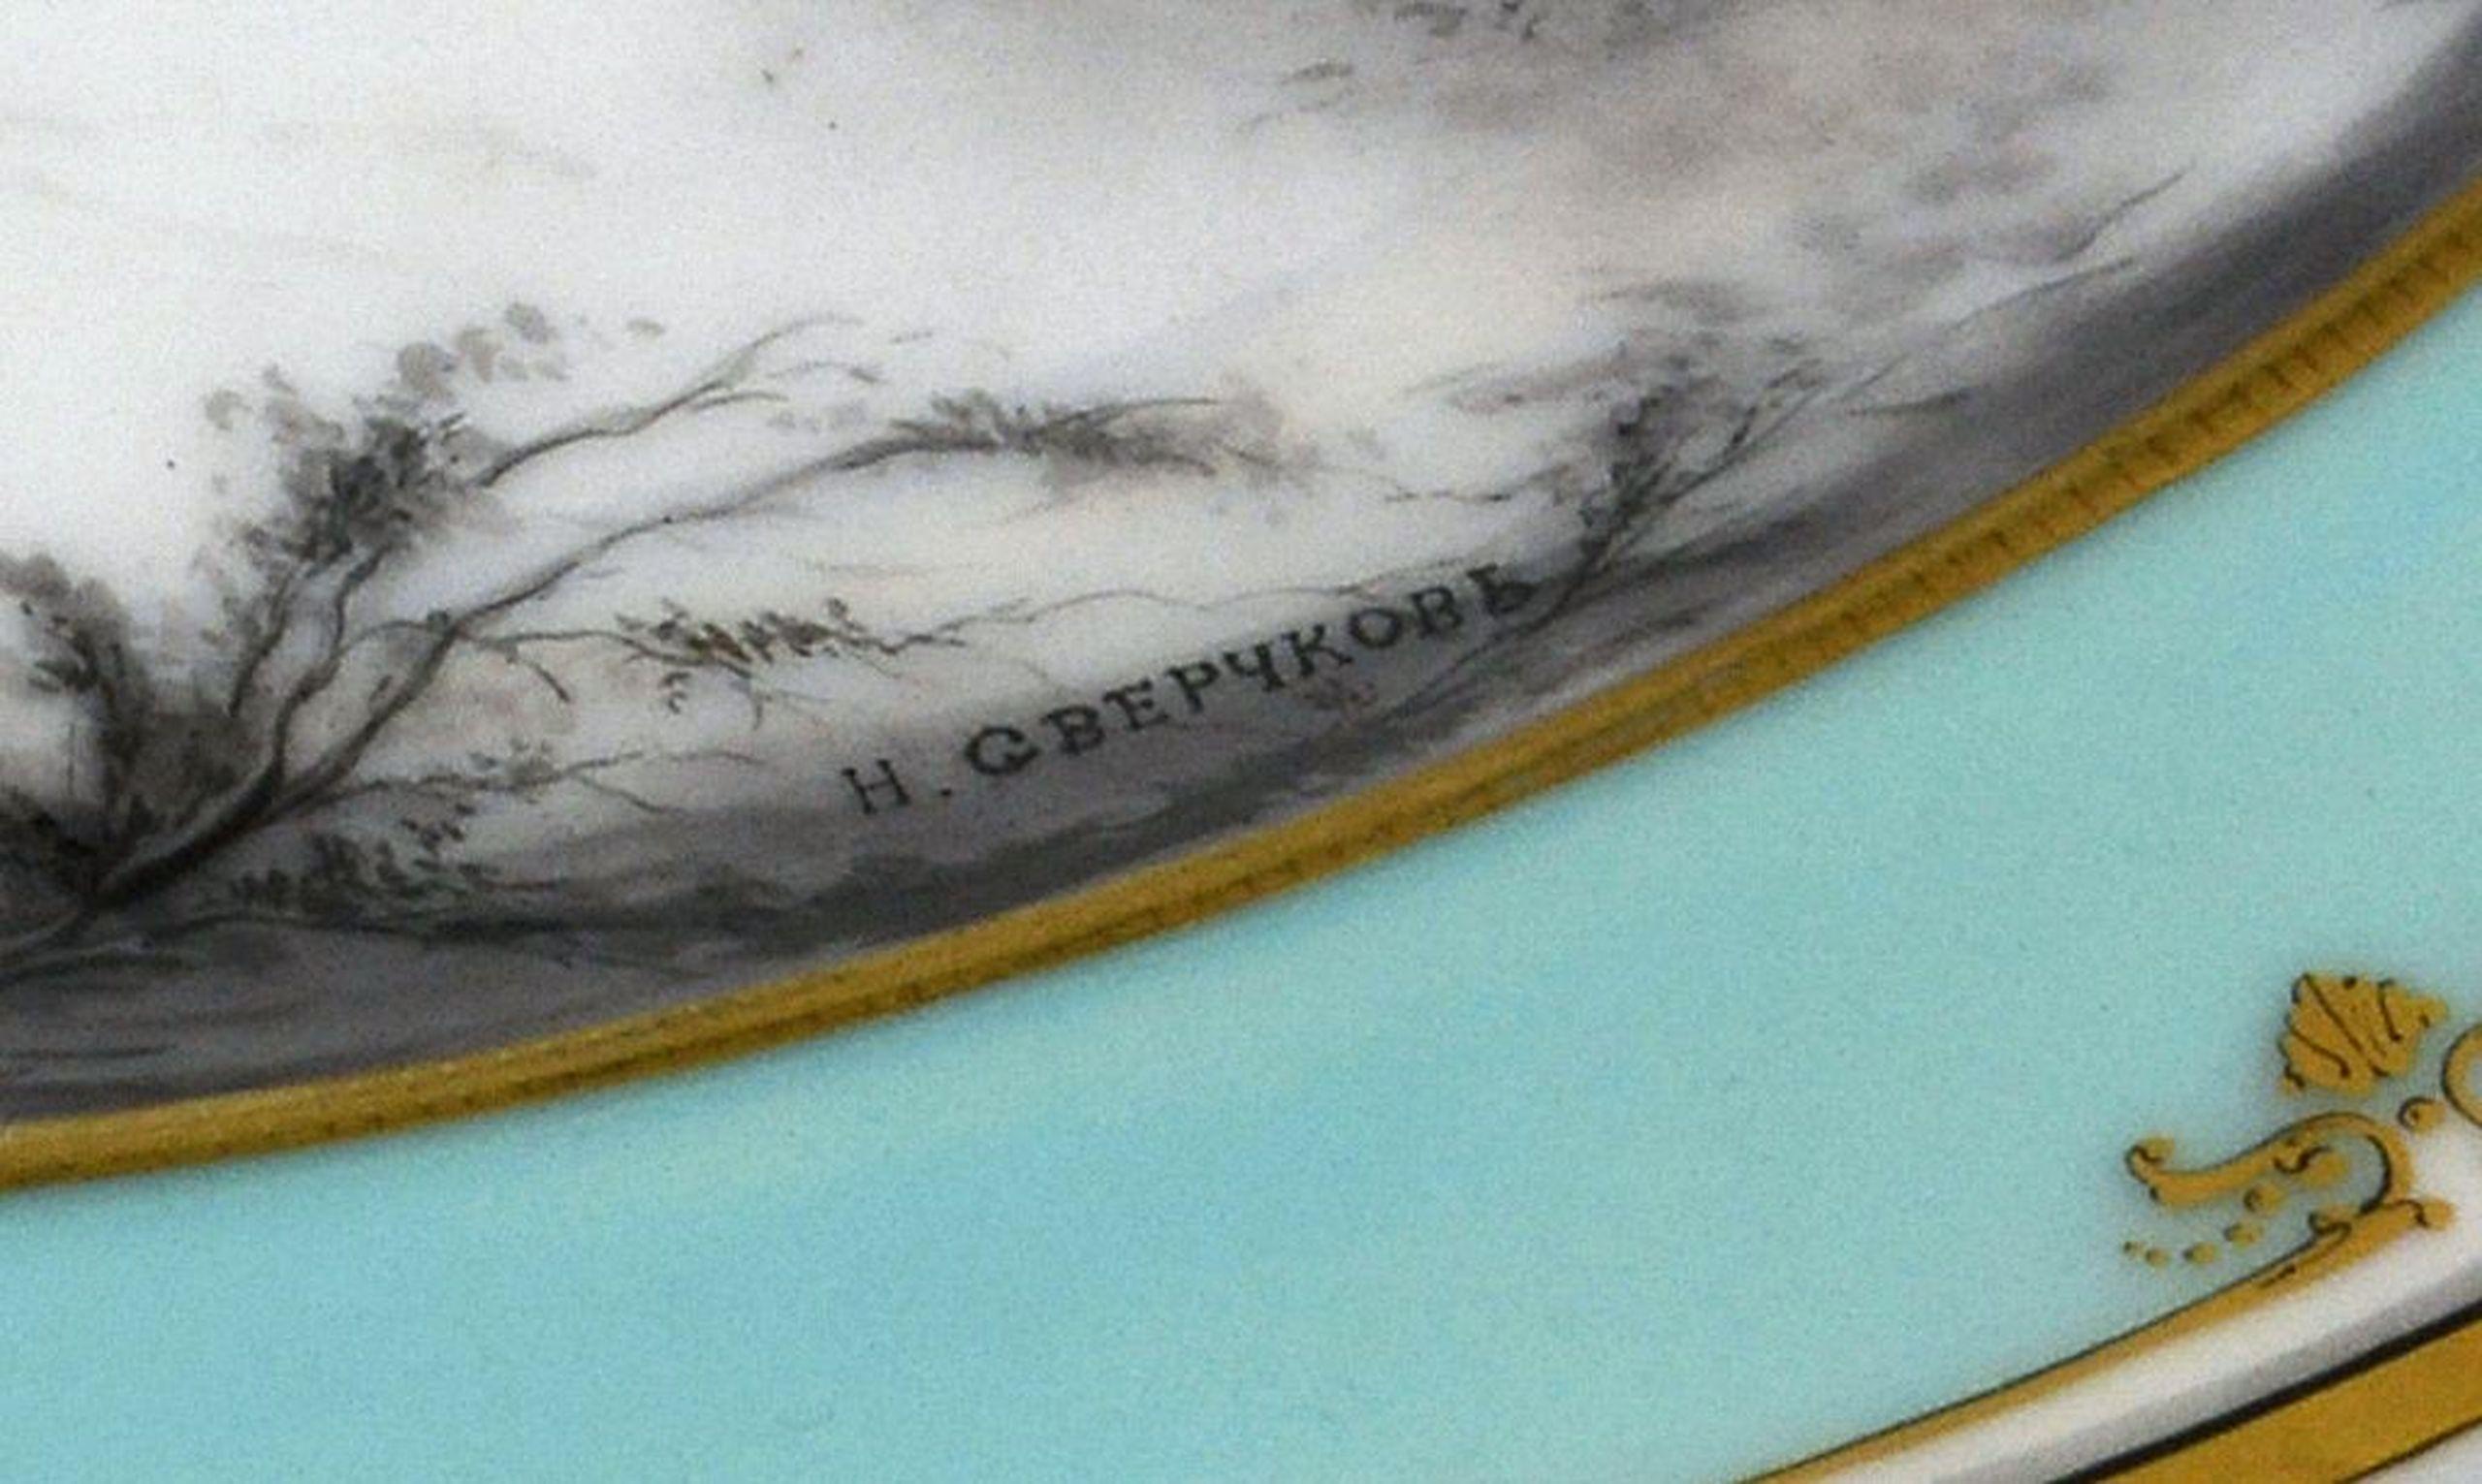 Ovale Platte. Auf der Rückkehr von einer Bärenjagd. 19. Jahrhundert. Porzellan, 4,5x39,5x26 cm


